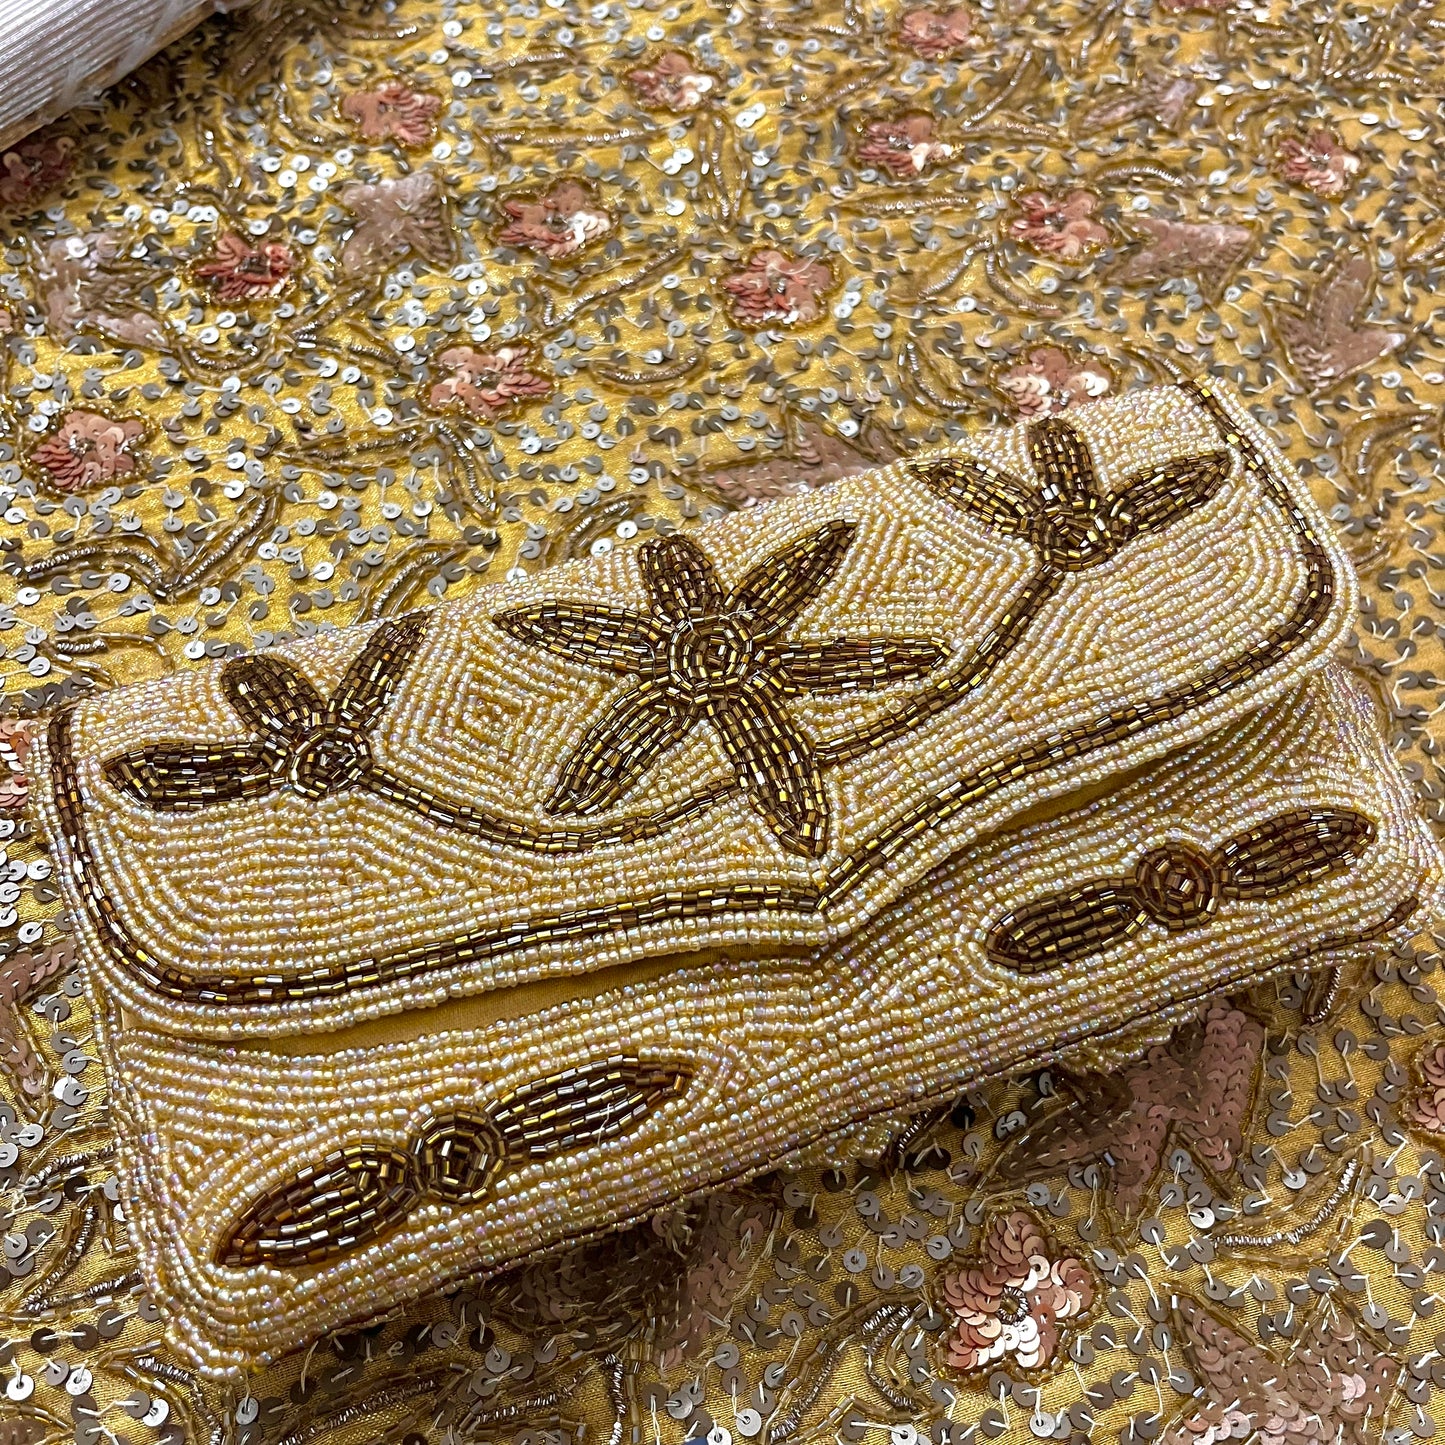 Golden bead embellished purse